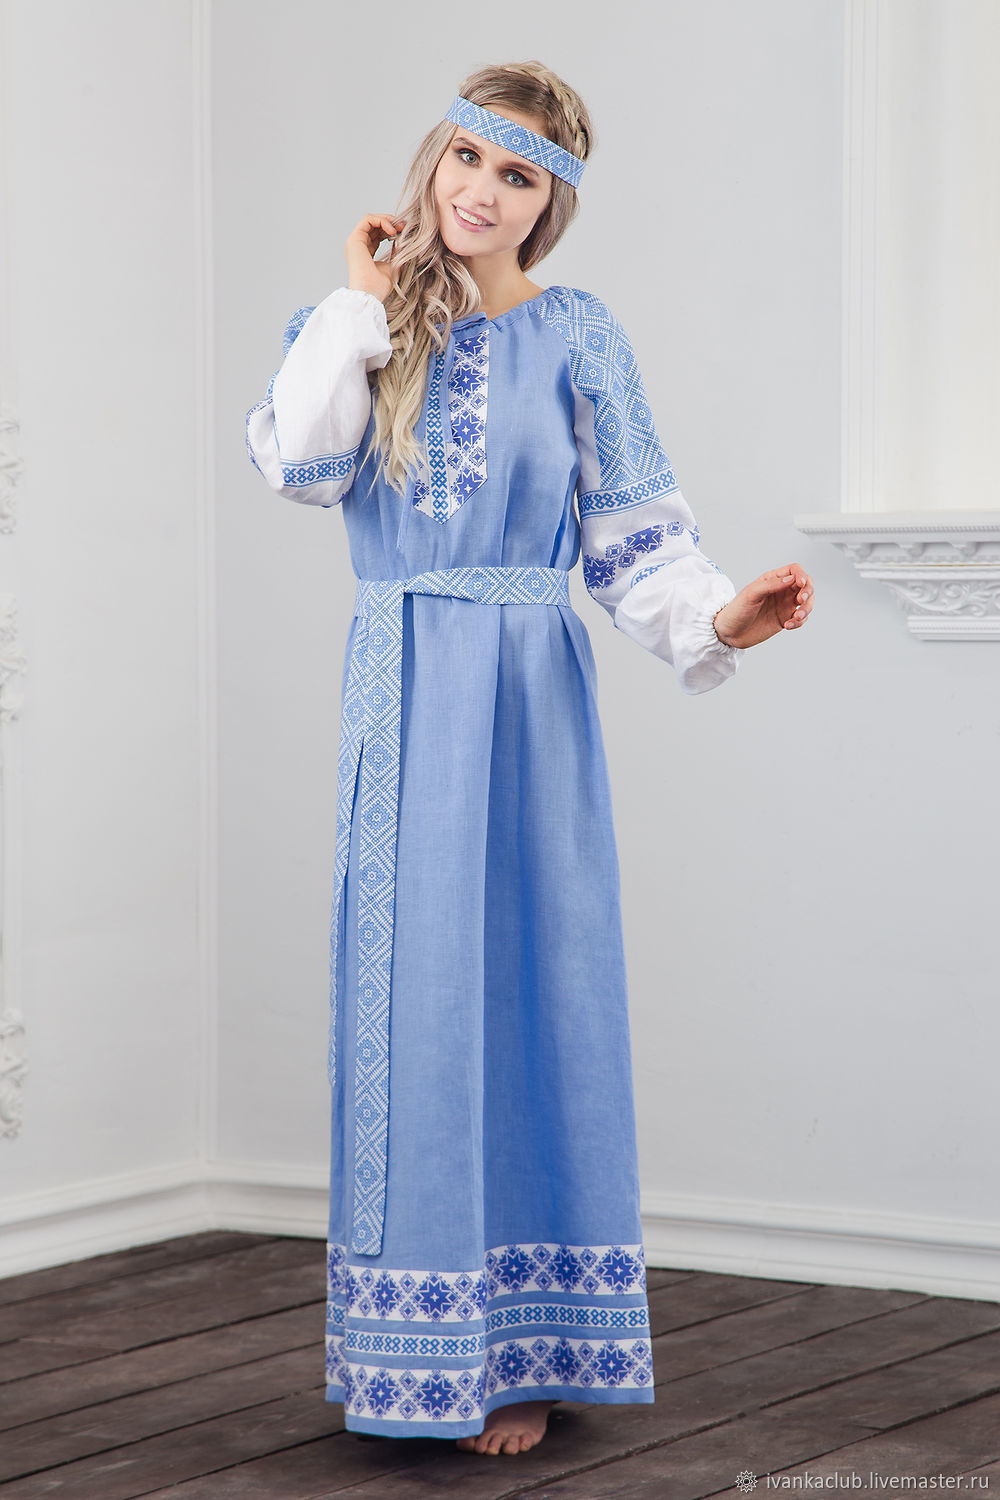 Dress linen Burdock happiness Russian folk, Folk dresses, Omsk,  Фото №1